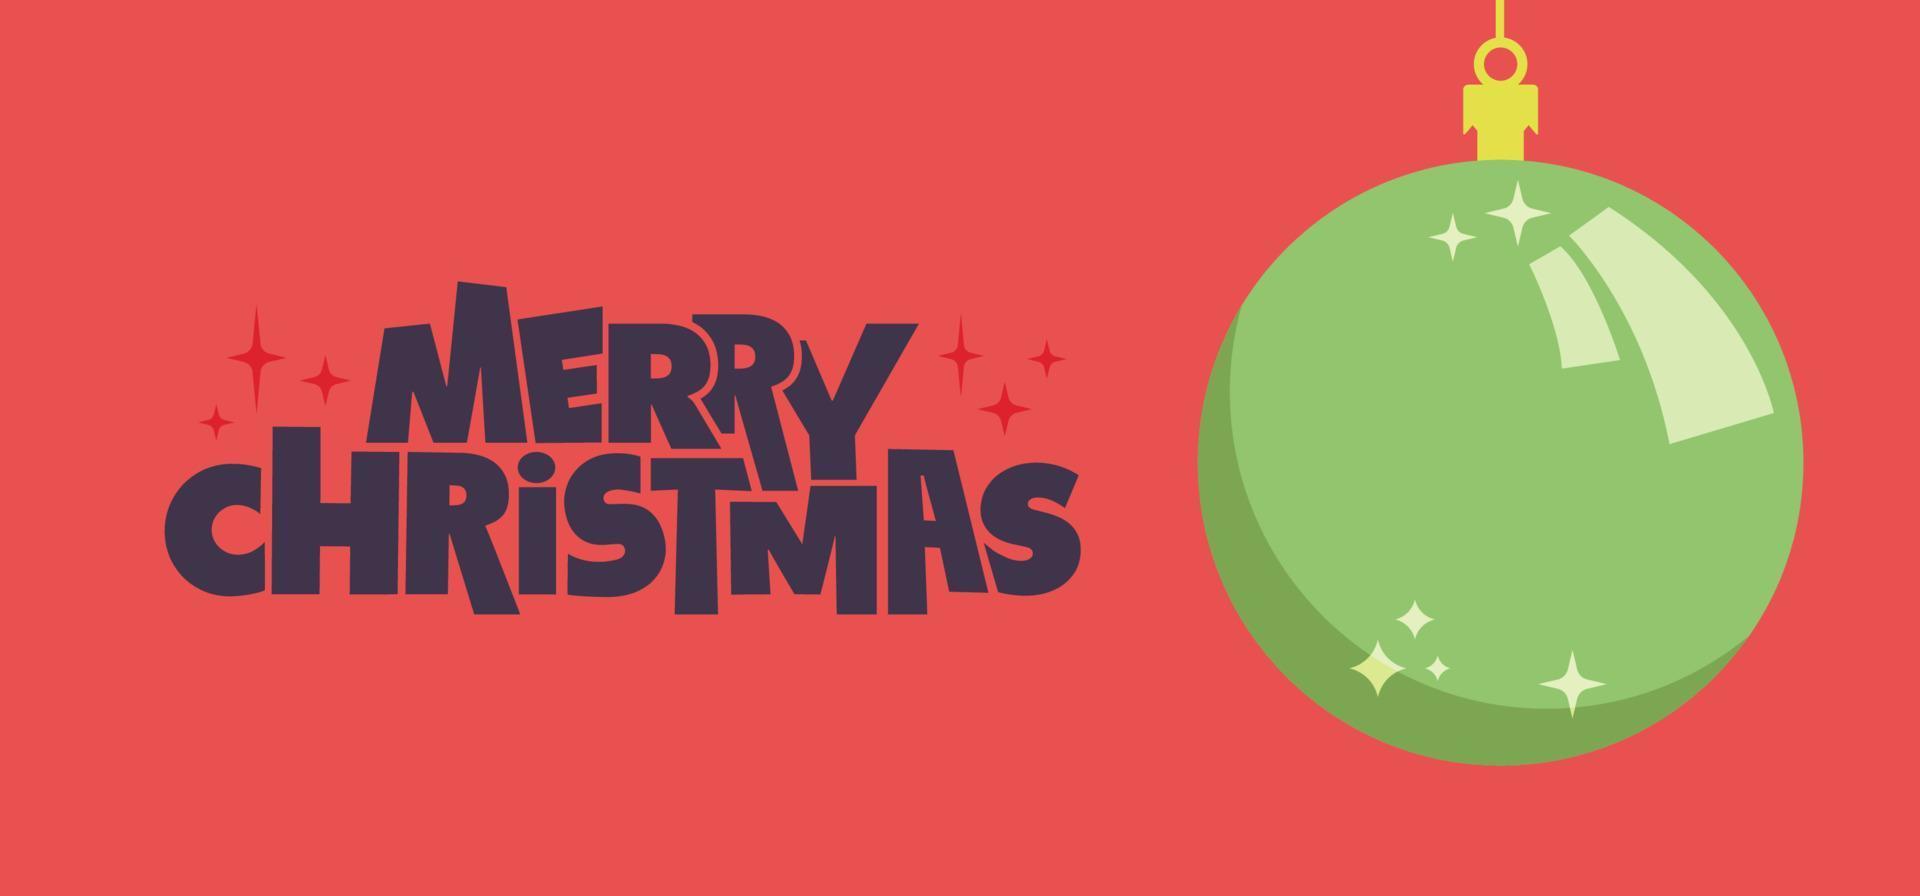 horizontales banner der frohen weihnachten. Weihnachtskugel im flachen Design. für grußkarte oder werbung im horizontalen design mit kopierraum. vektor